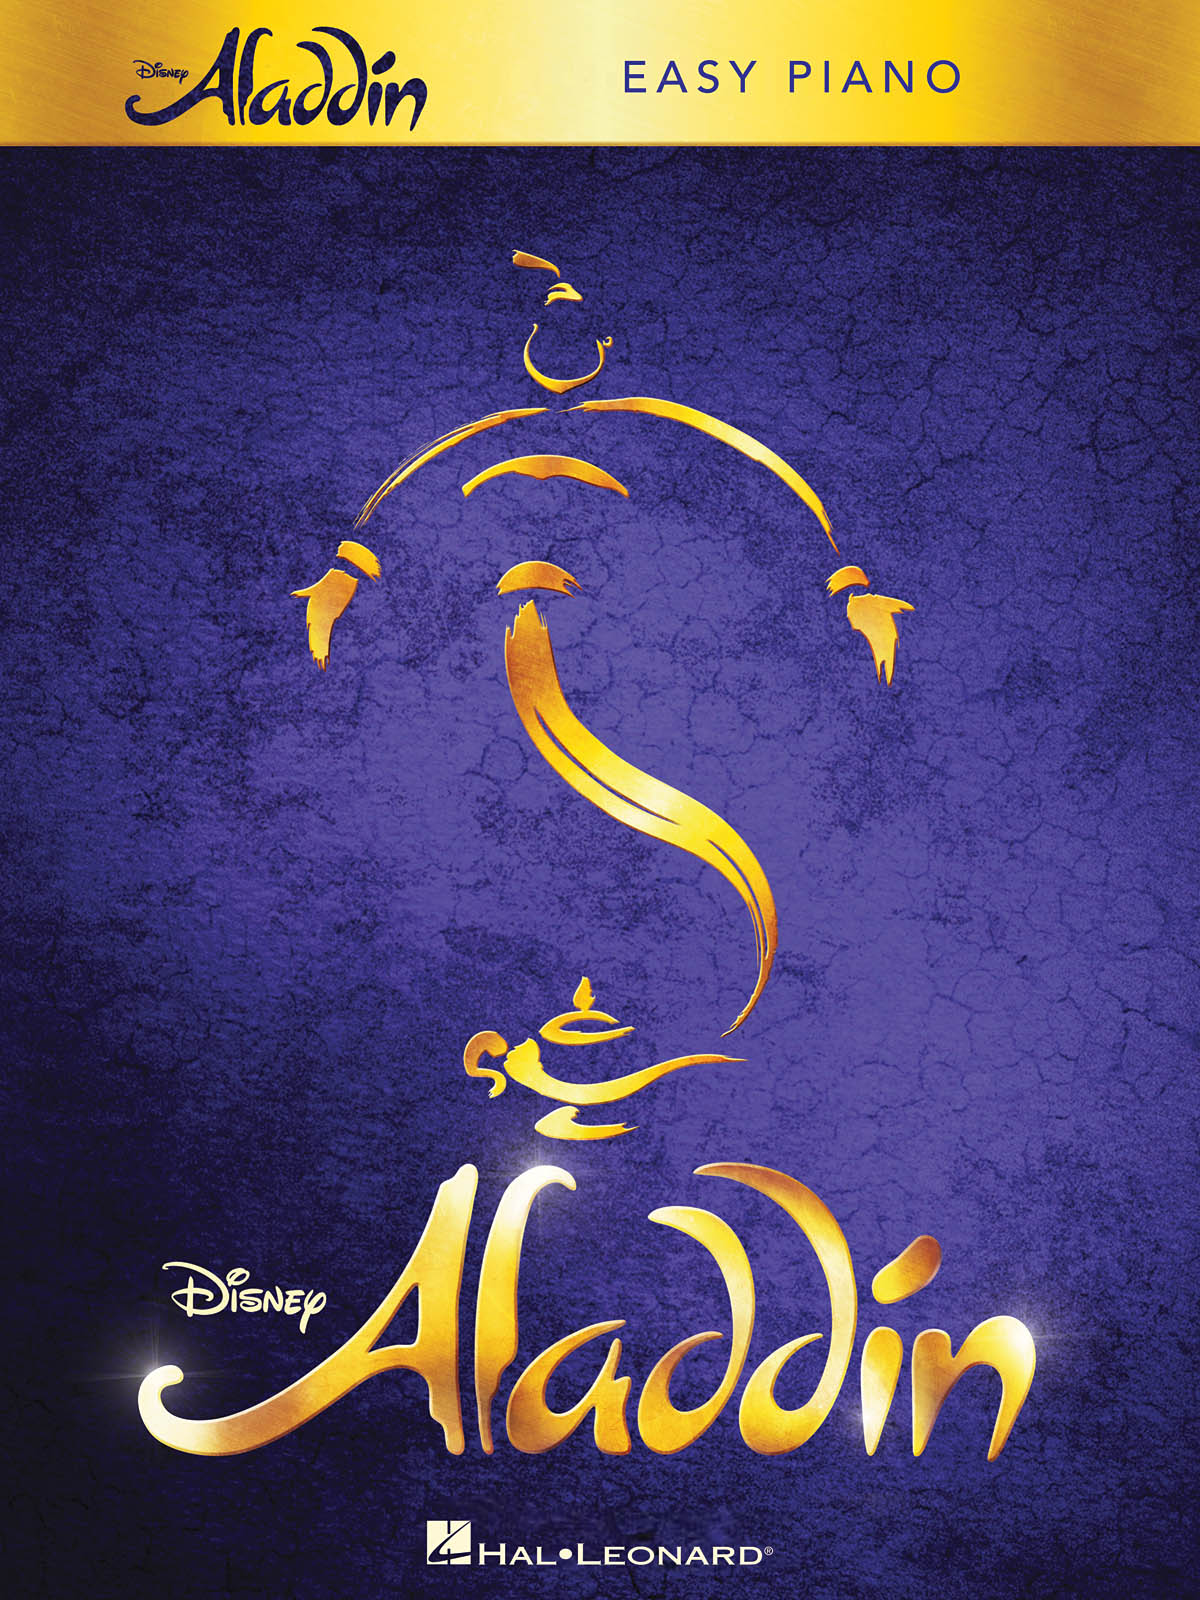 Aladdin - Broadway Musical v jednoduché úpravě pro klavír